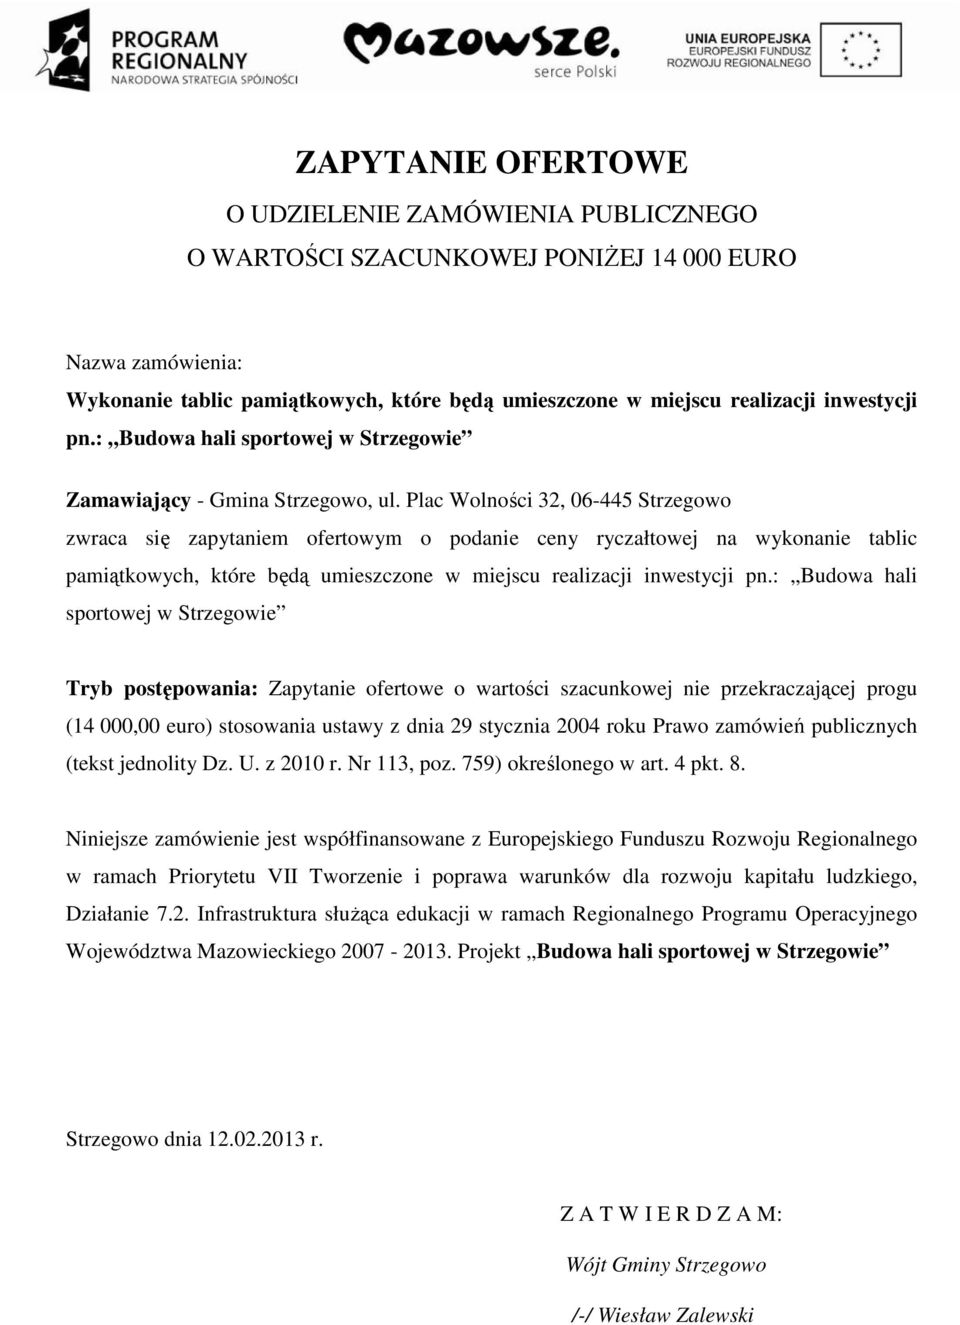 Plac Wolności 32, 06-445 Strzegowo zwraca się zapytaniem ofertowym o podanie ceny ryczałtowej na wykonanie tablic pamiątkowych, które będą umieszczone w miejscu realizacji inwestycji pn.